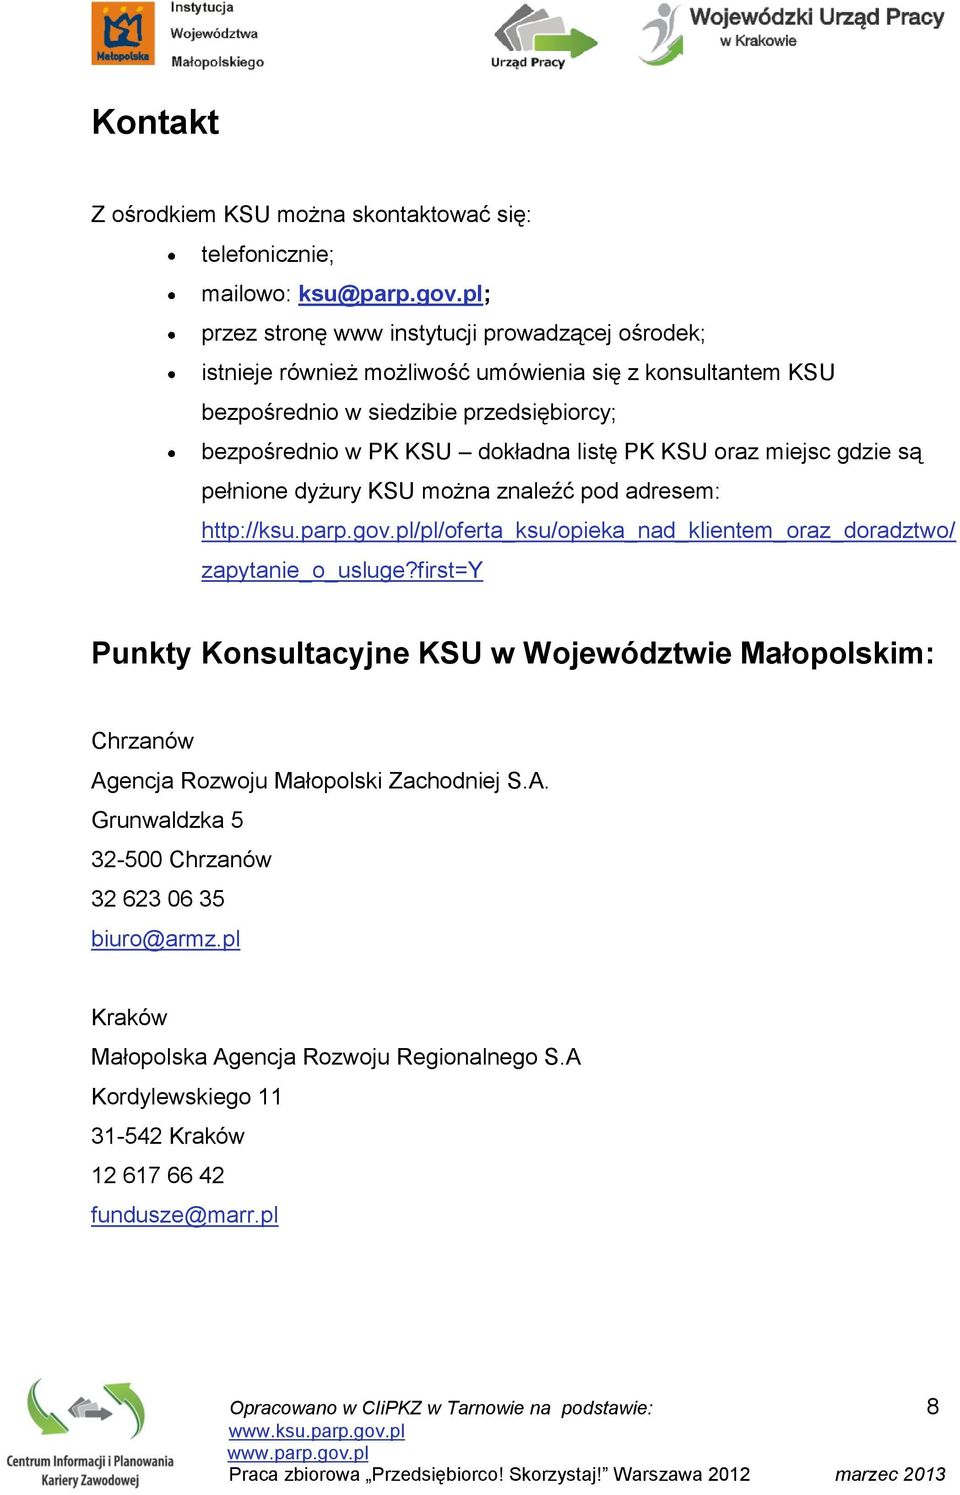 PK KSU oraz miejsc gdzie są pełnione dyżury KSU można znaleźć pod adresem: http://ksu.parp.gov.pl/pl/oferta_ksu/opieka_nad_klientem_oraz_doradztwo/ zapytanie_o_usluge?